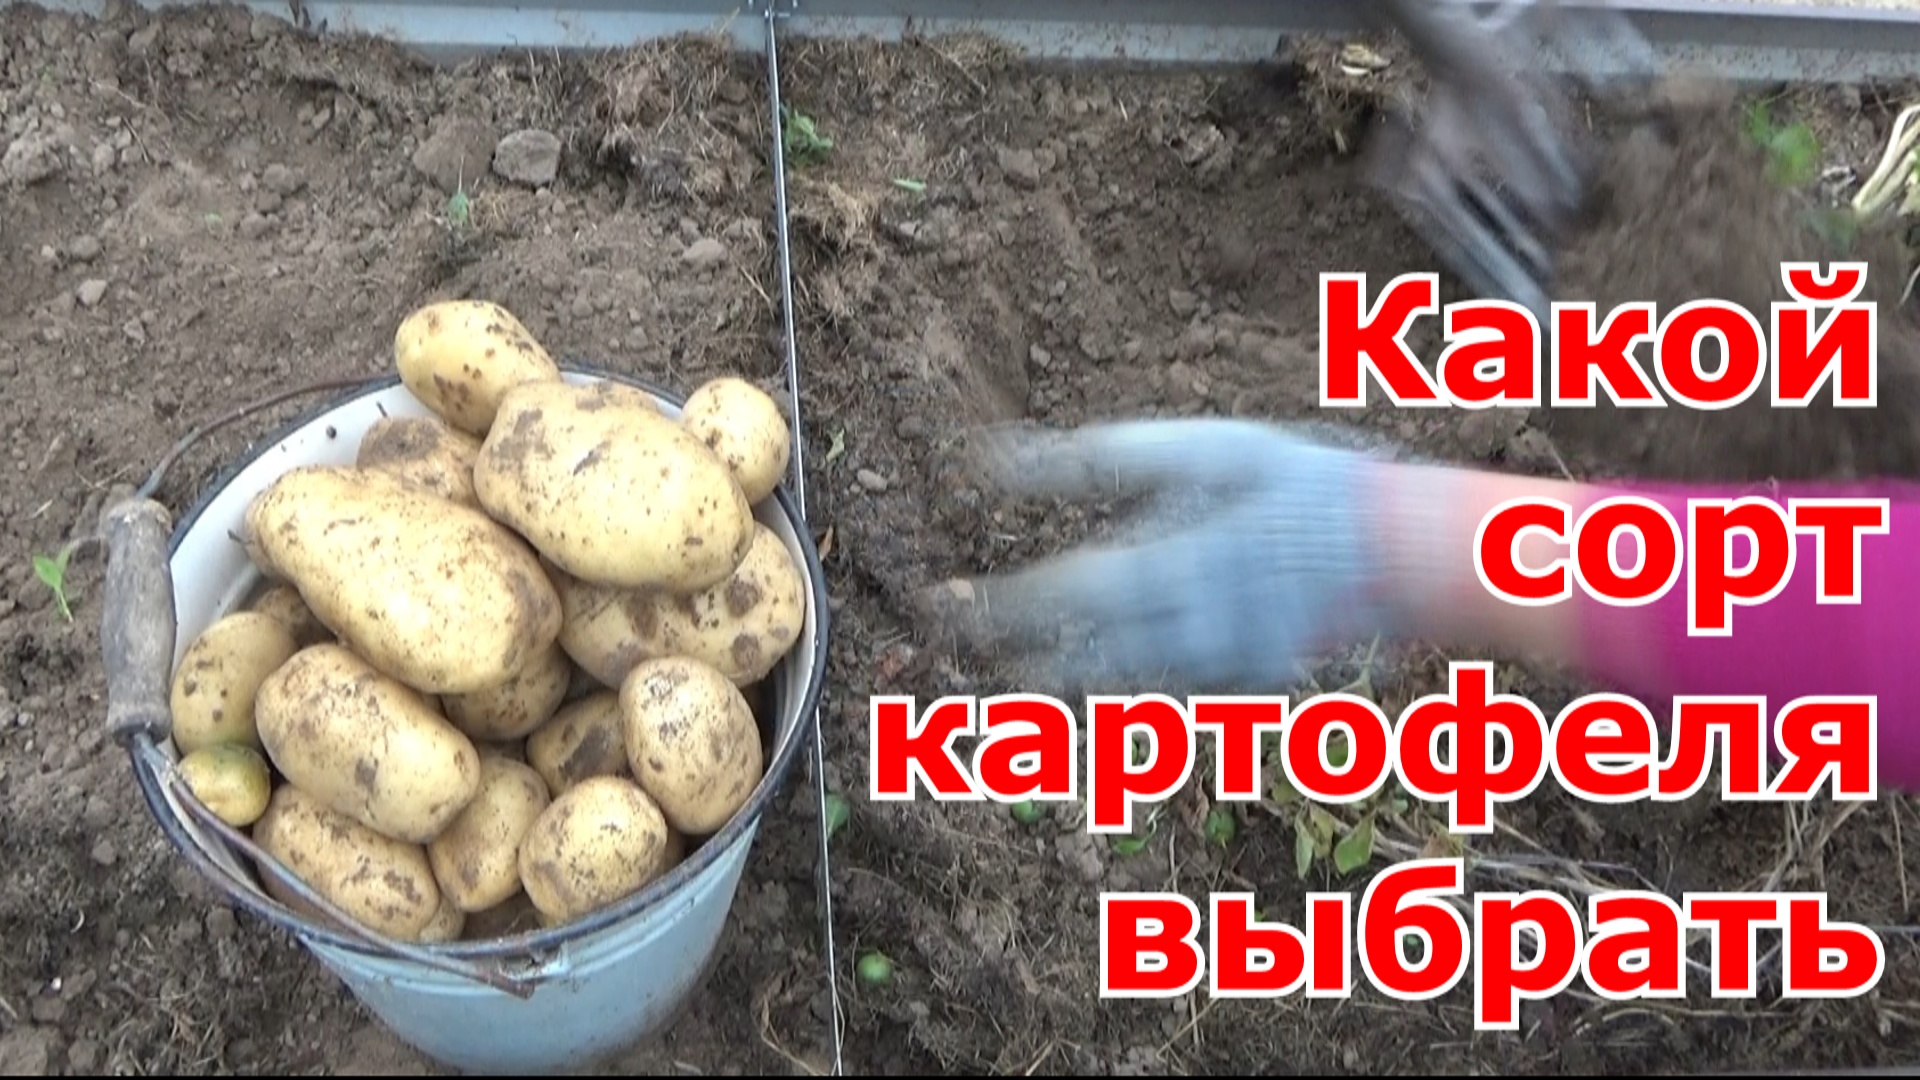 Испытание сортов картофеля